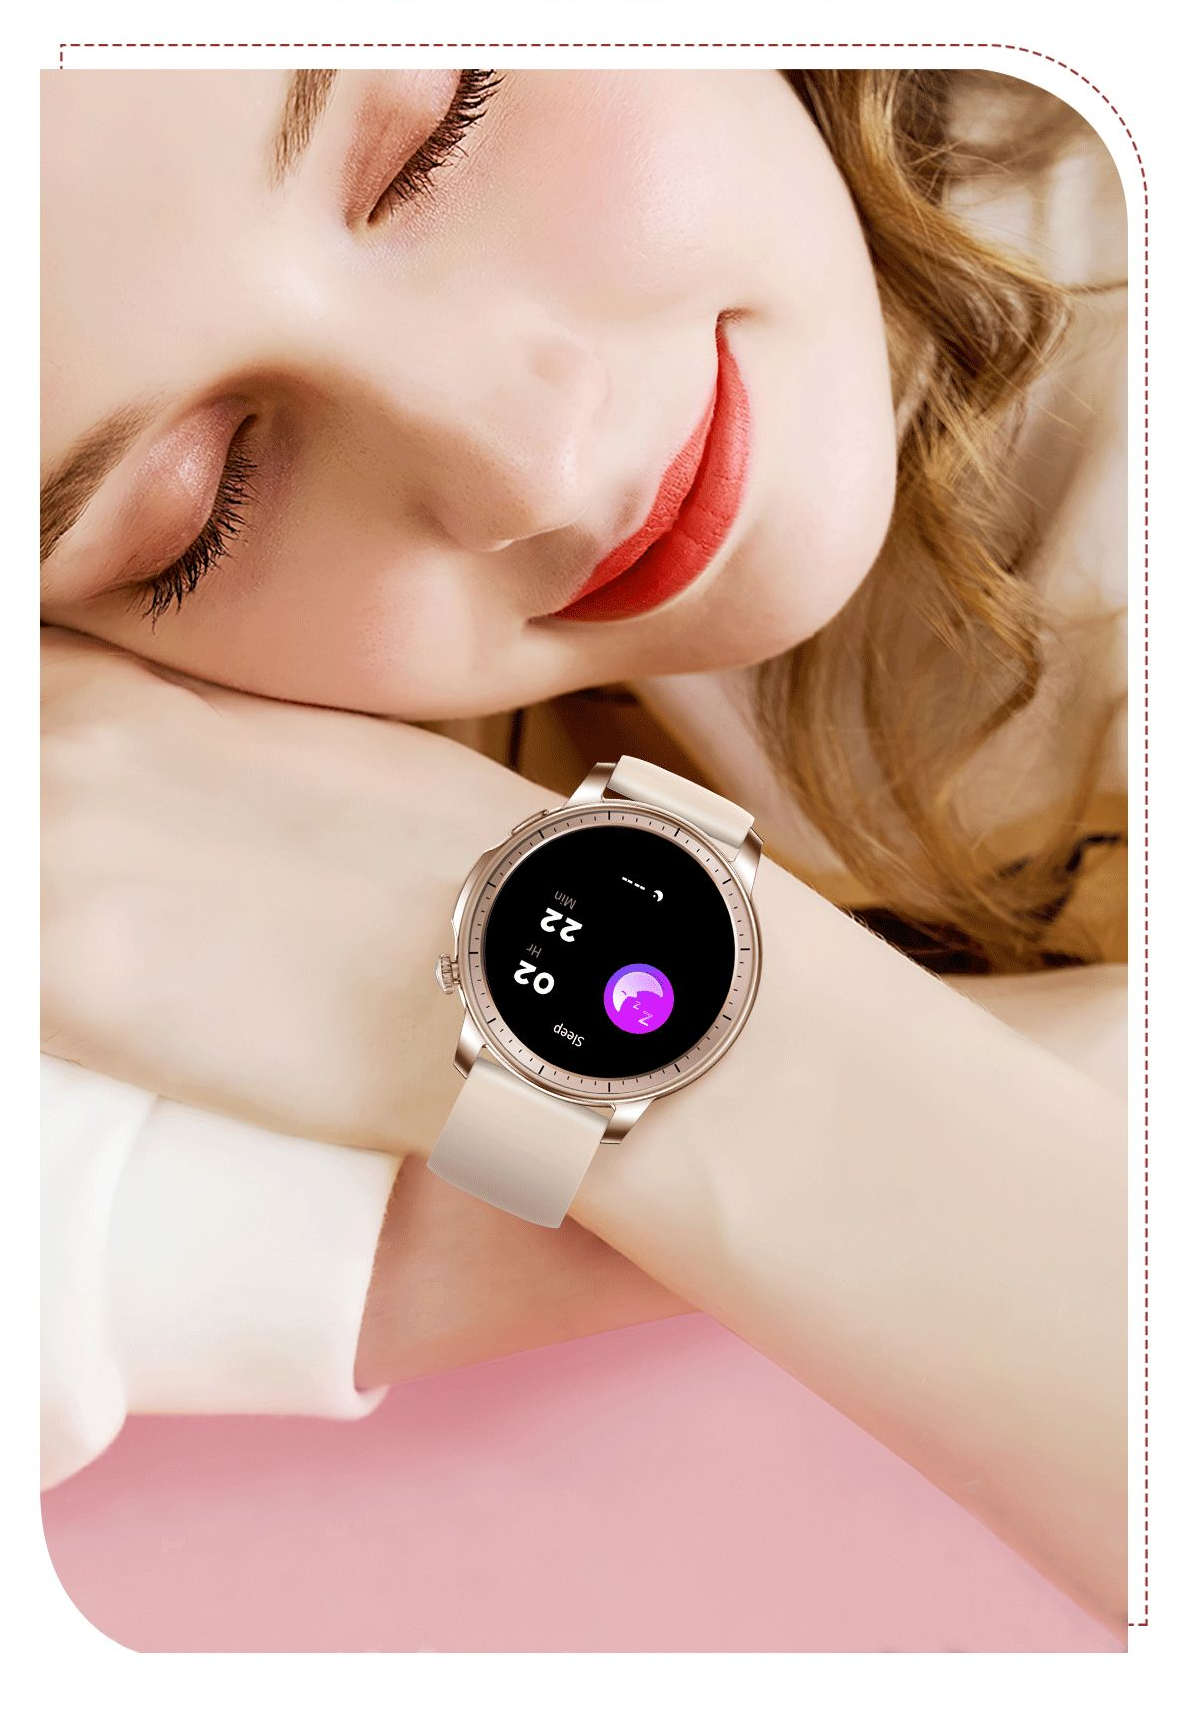 COLMI V65 Smartwatch 1.32″ AMOLED pantaila moda Unisex erloju adimenduna emakumeentzat